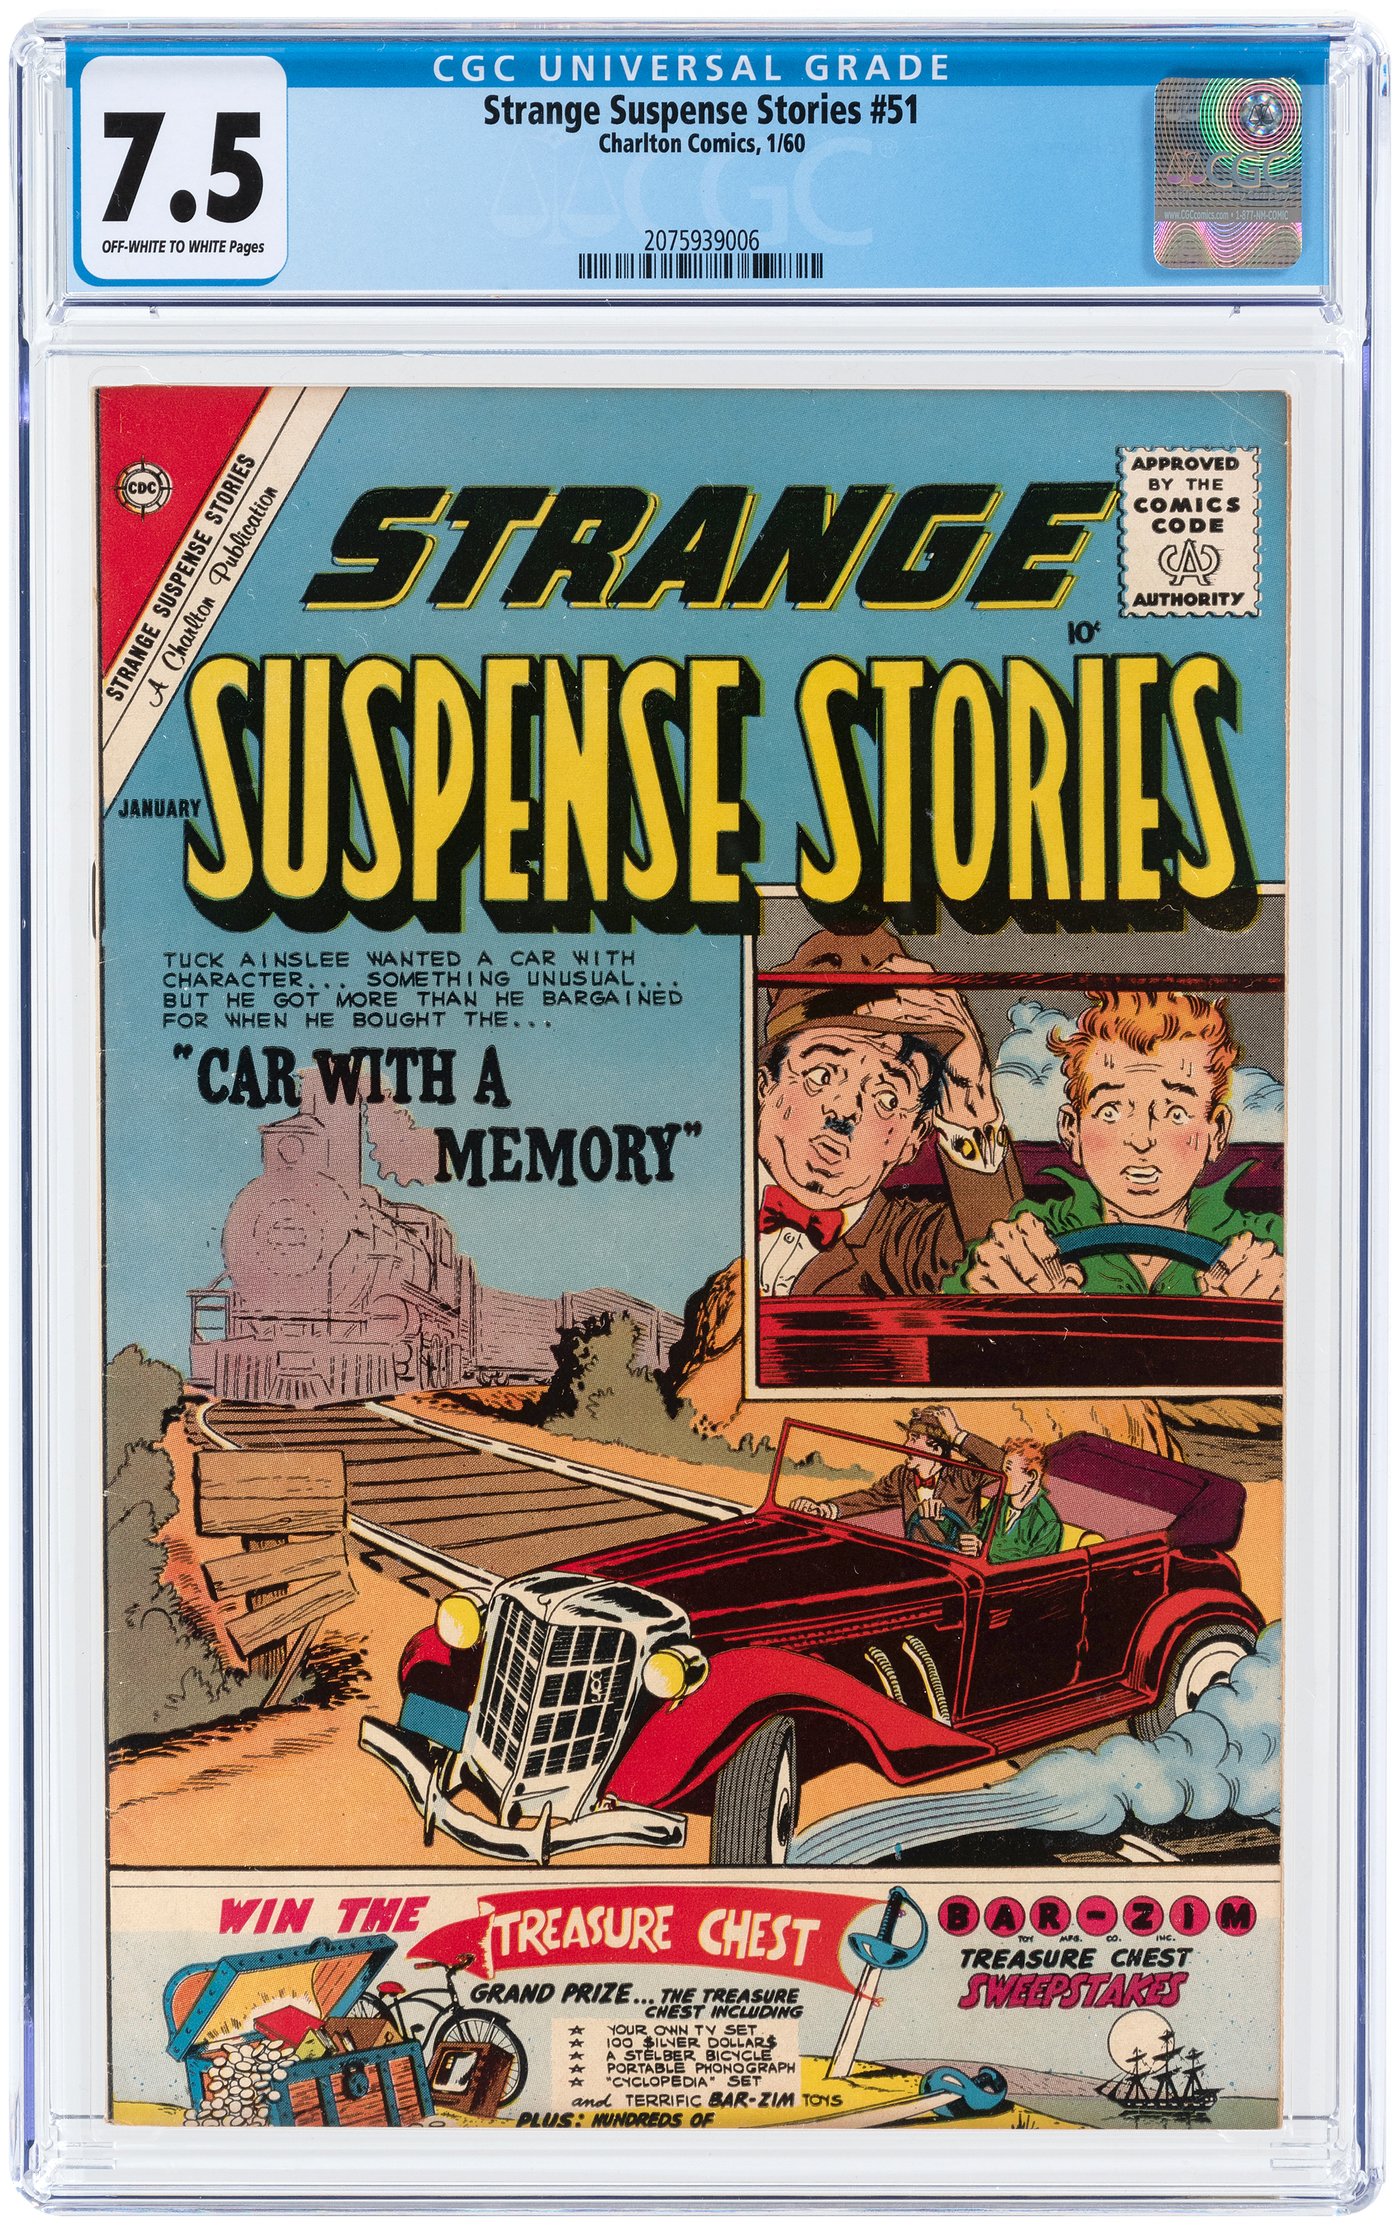 Hake's - STRANGE SUSPENSE STORIES #51 JANUARY 1960 CGC 7.5 VF-.